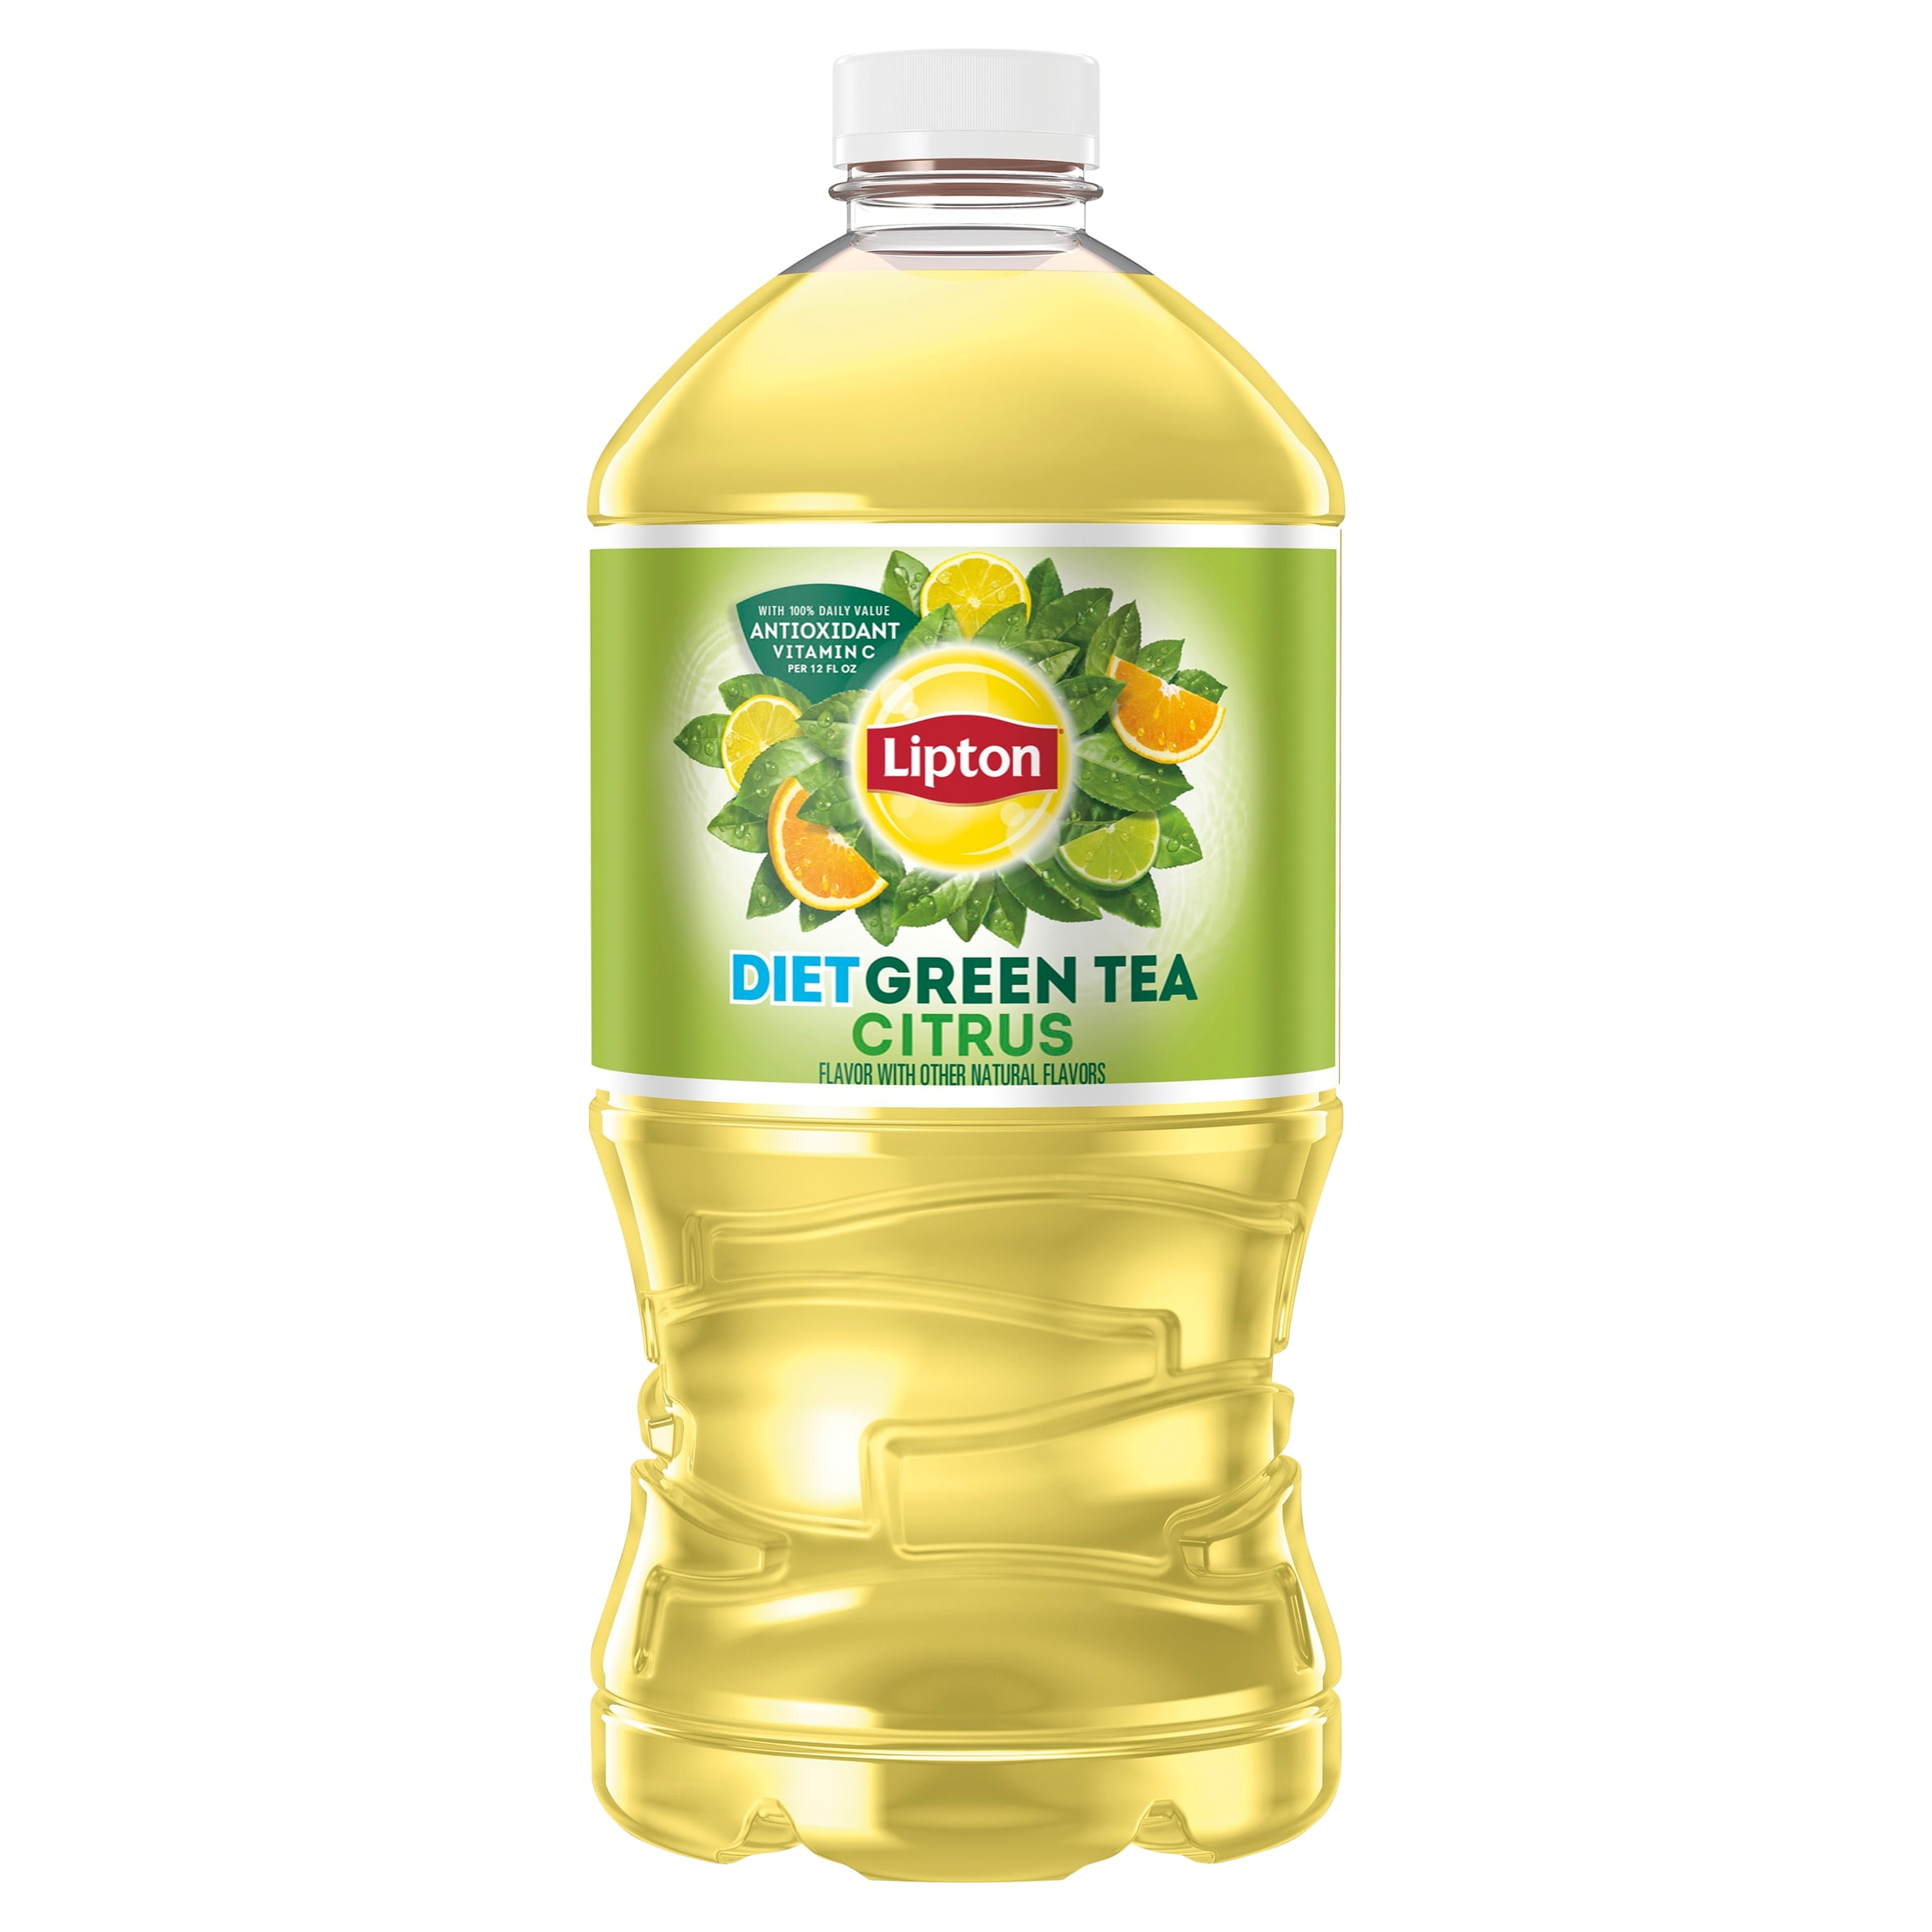 Lipton Diet Green Tea Citrus Iced Tea, 64 oz Bottle